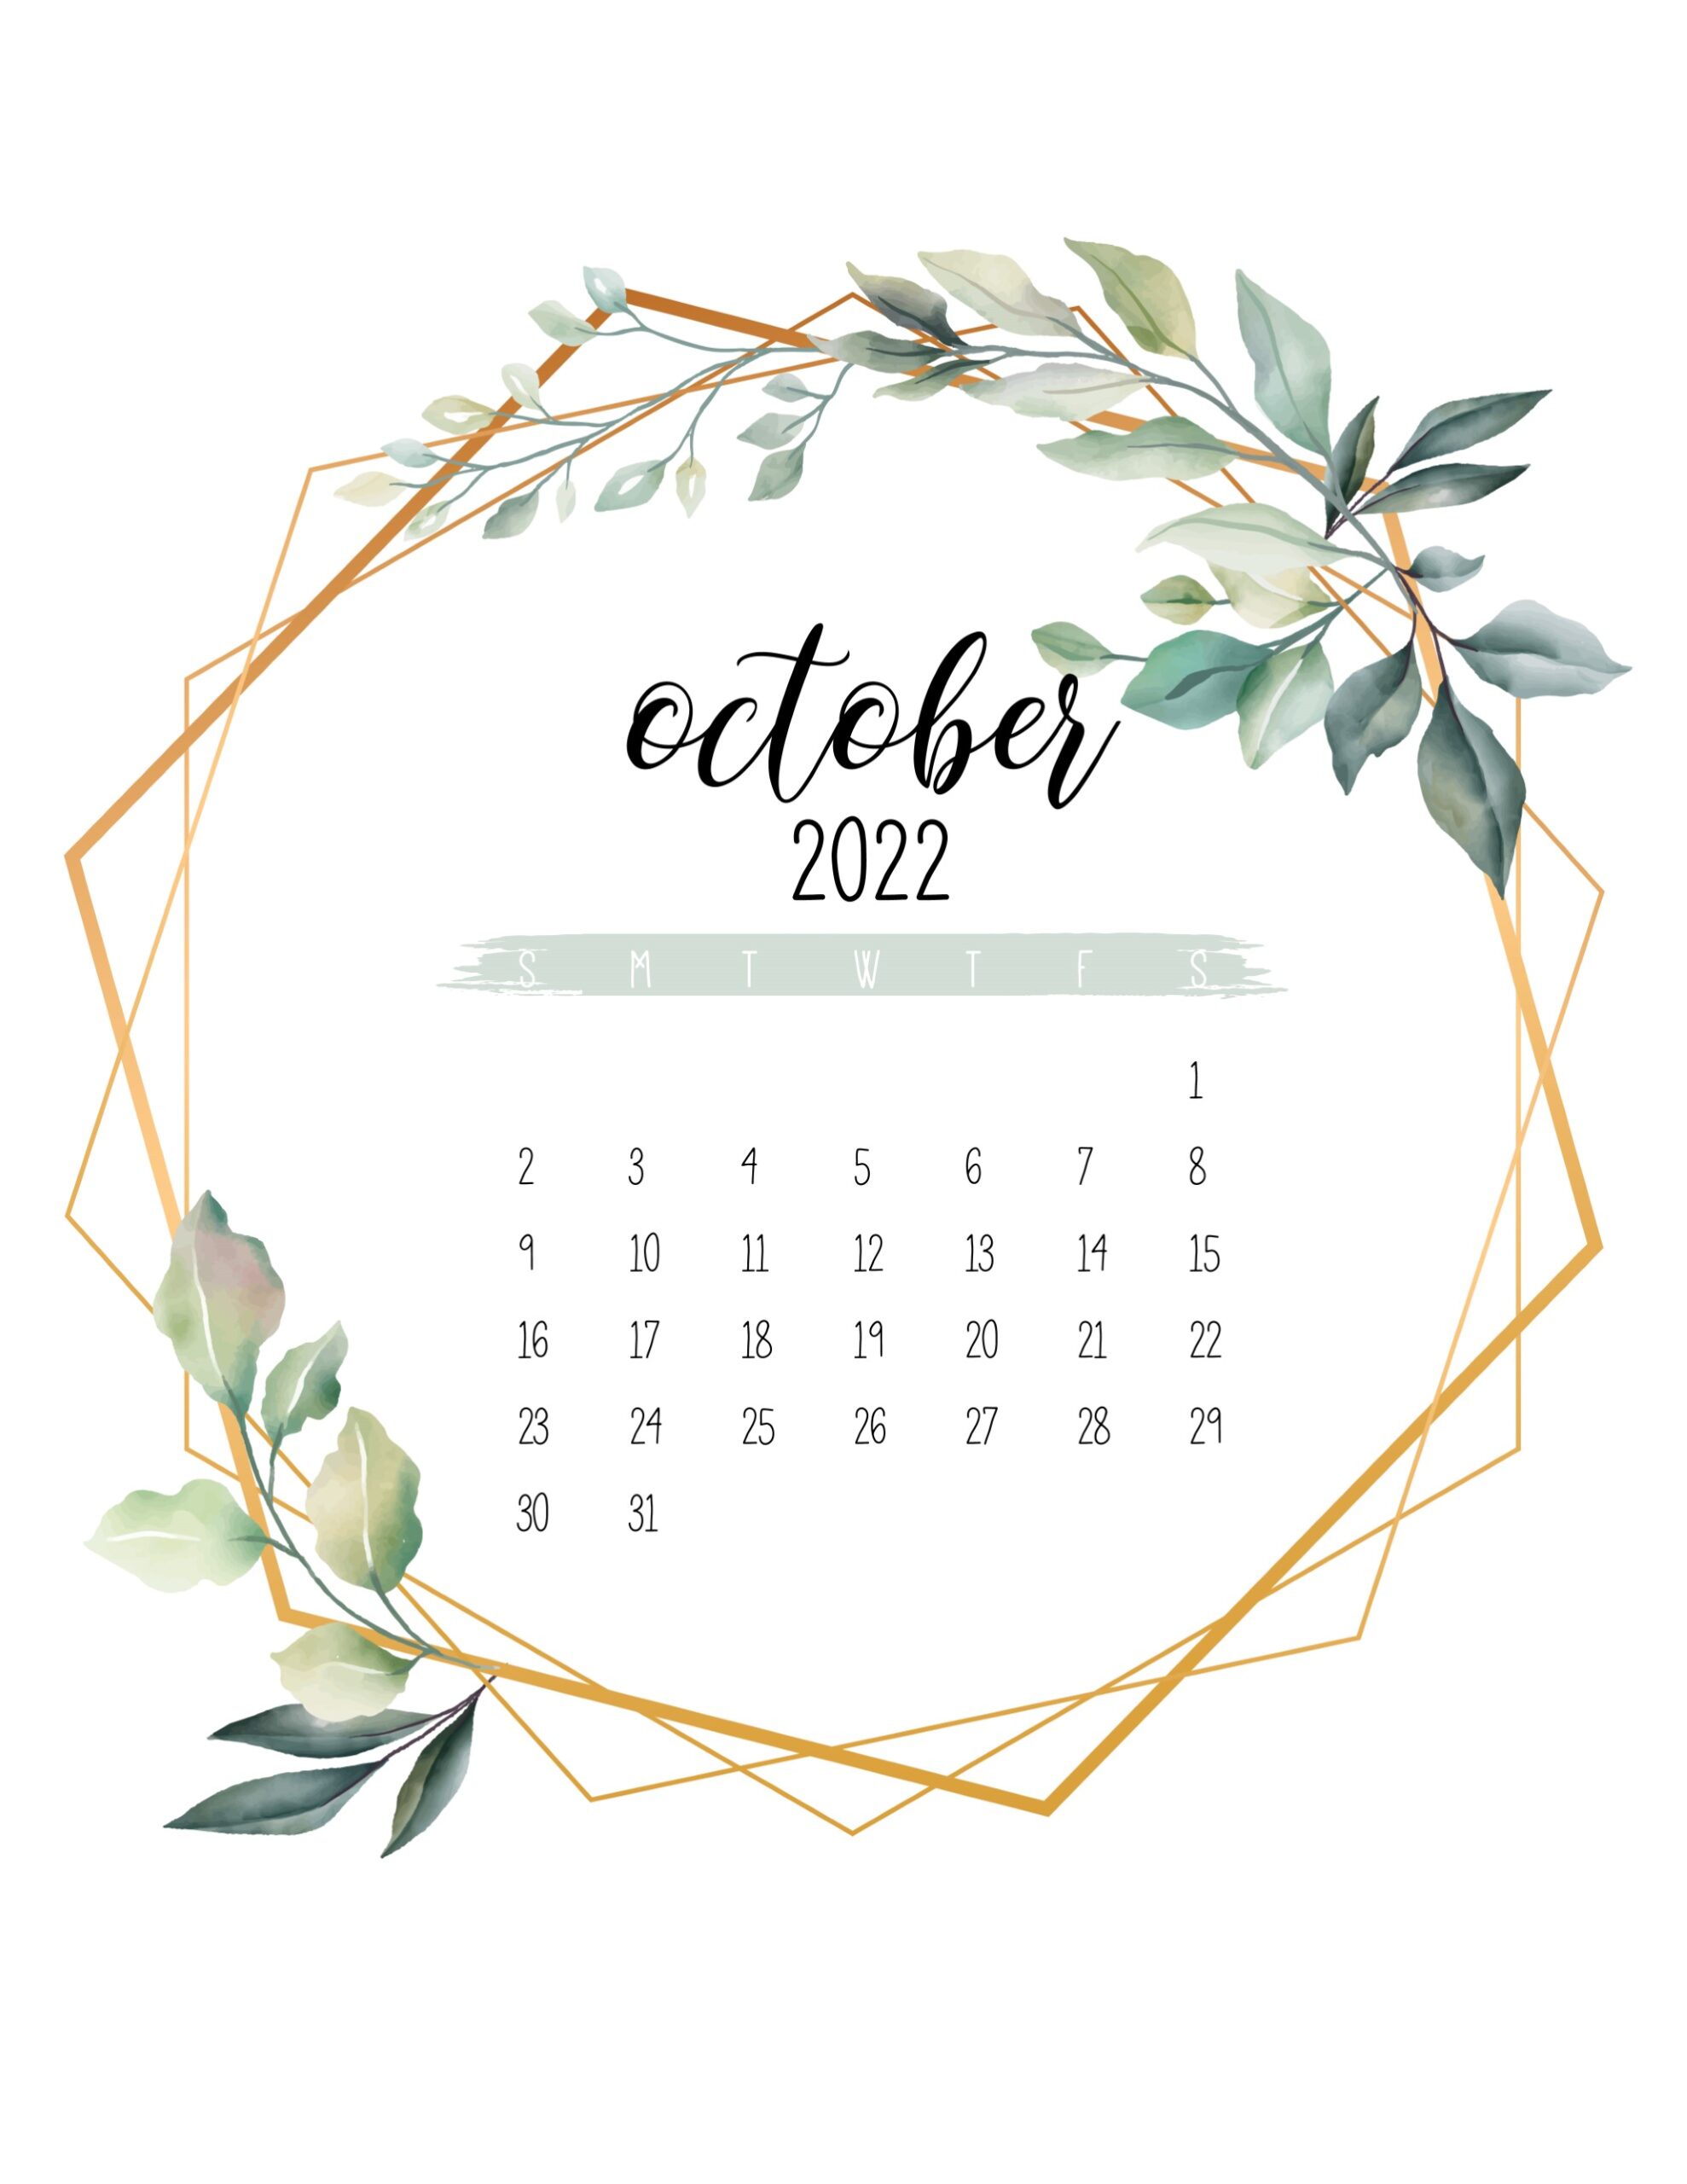 Calendario 2022 jardim botanico outubro